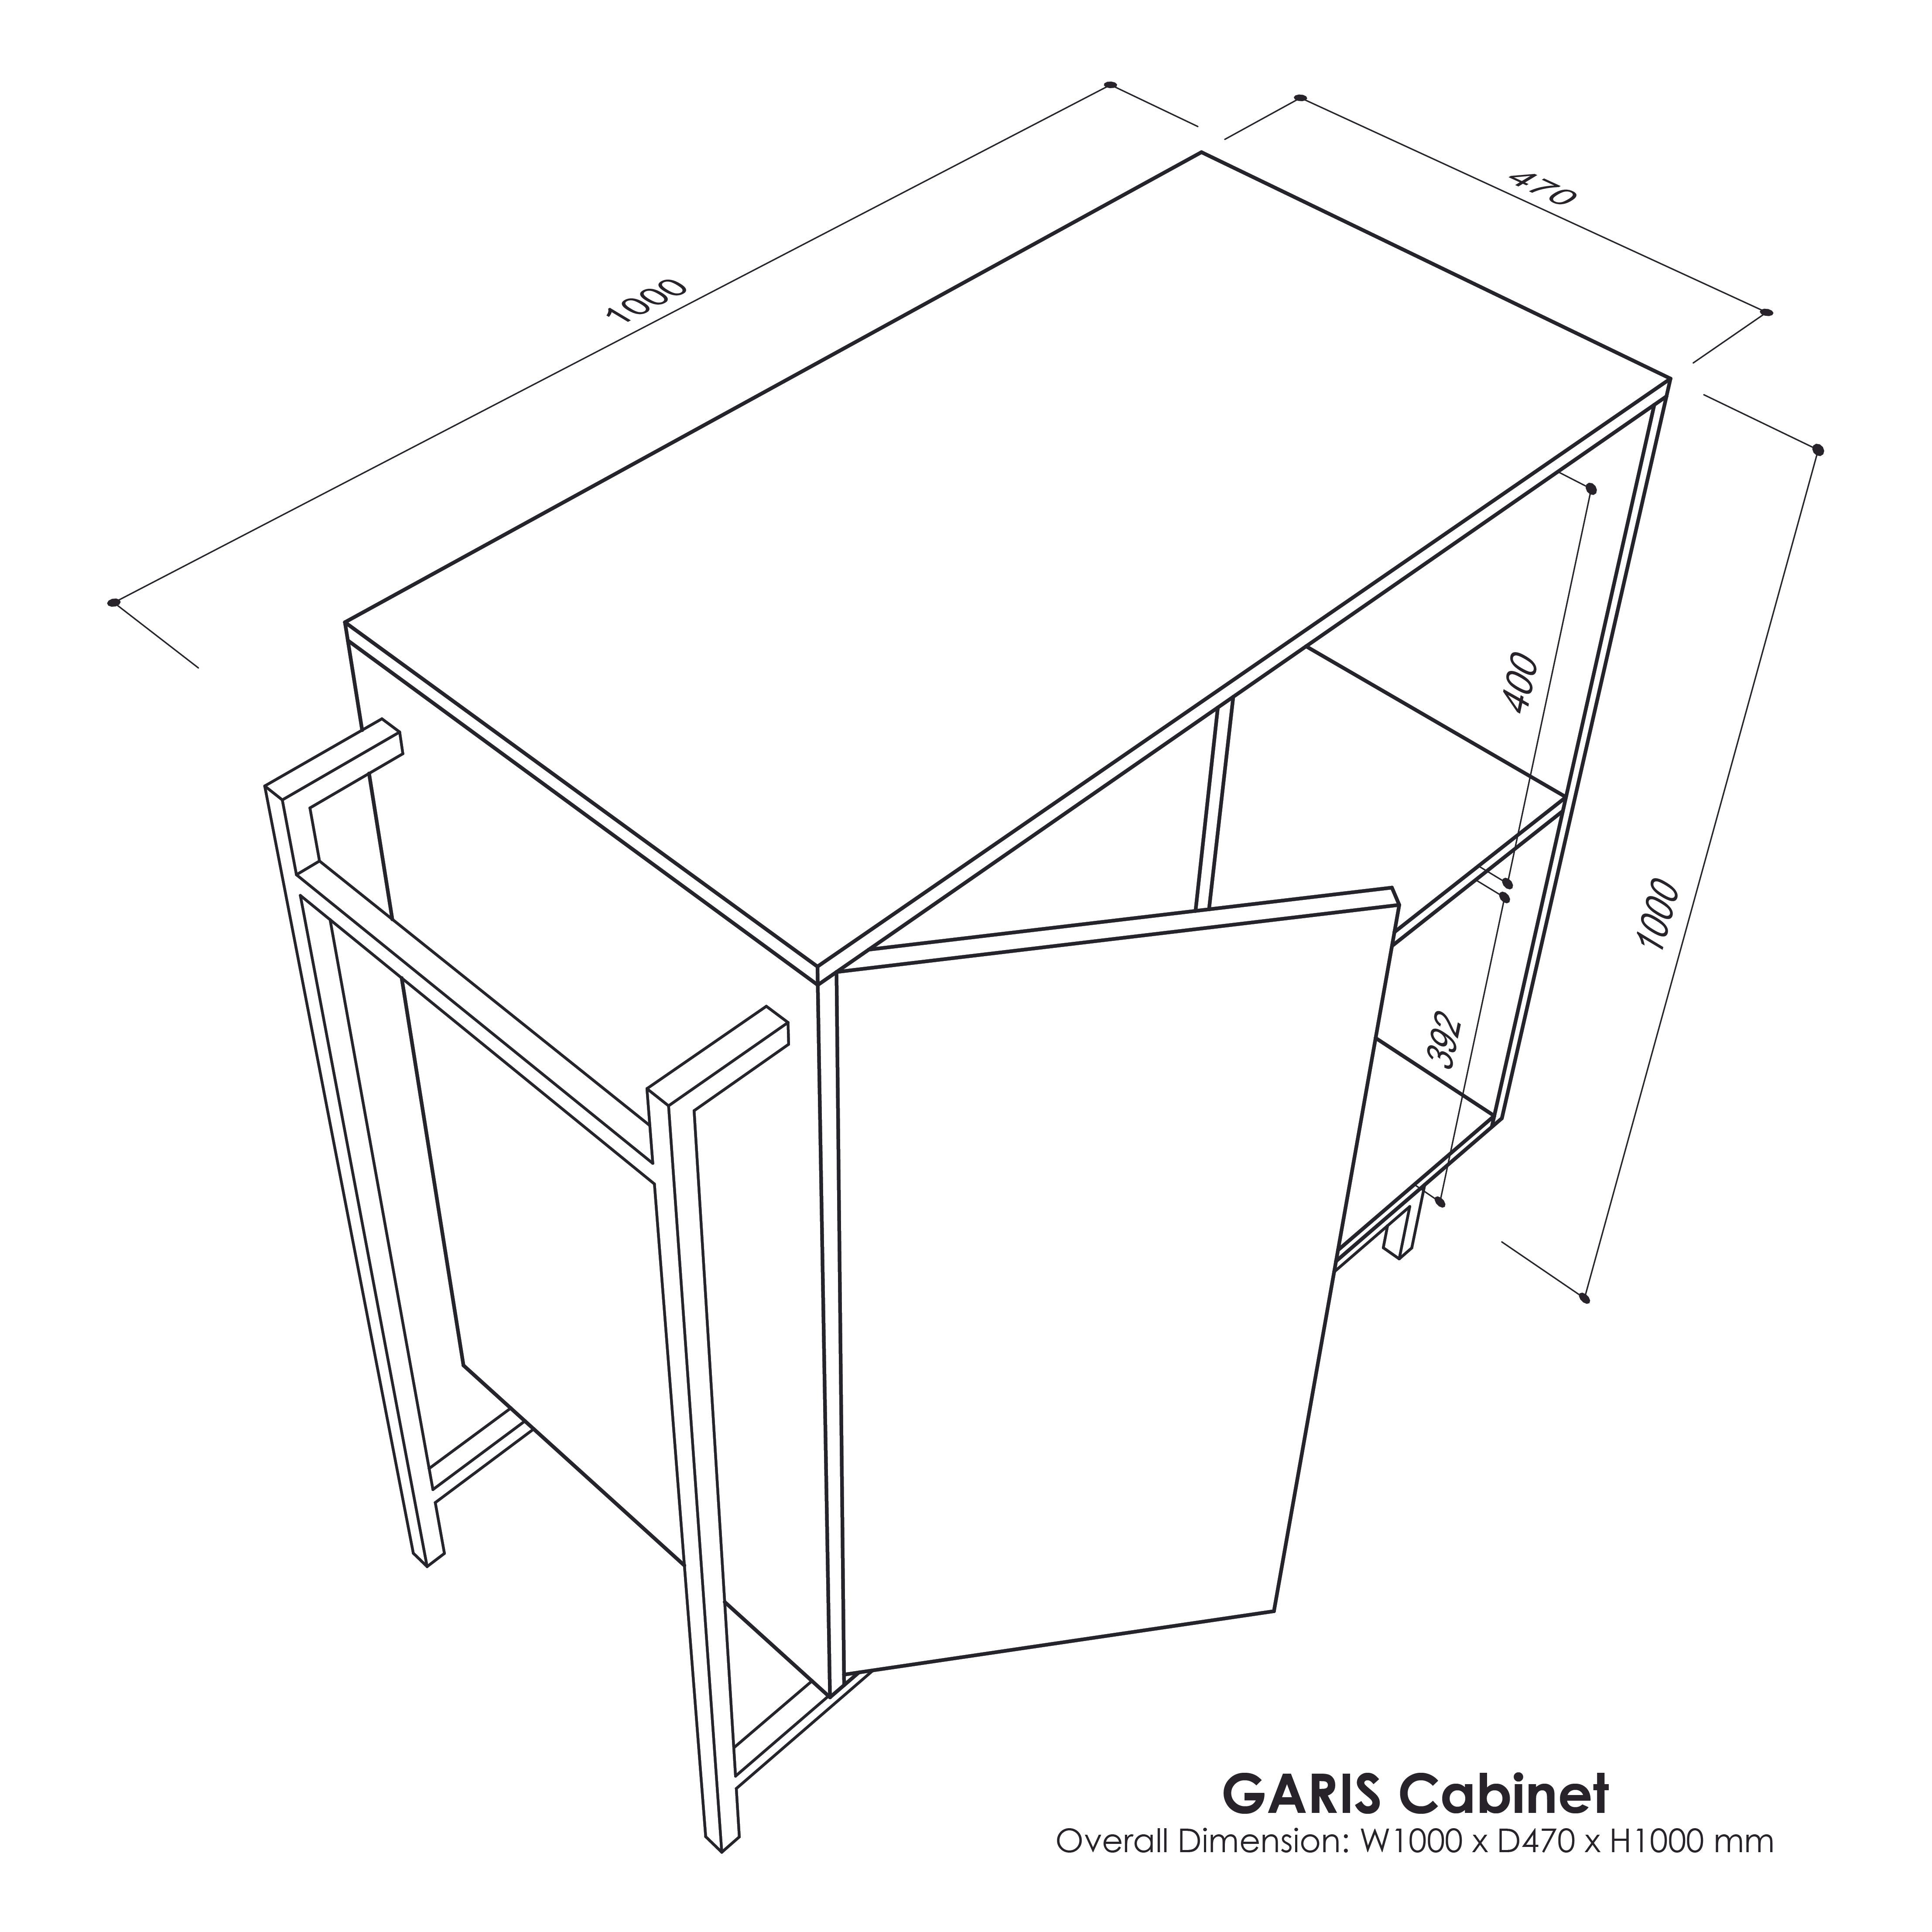 GARIS Cabinet V2.0 Exhibit Sales at Seremban 2 Offline Store